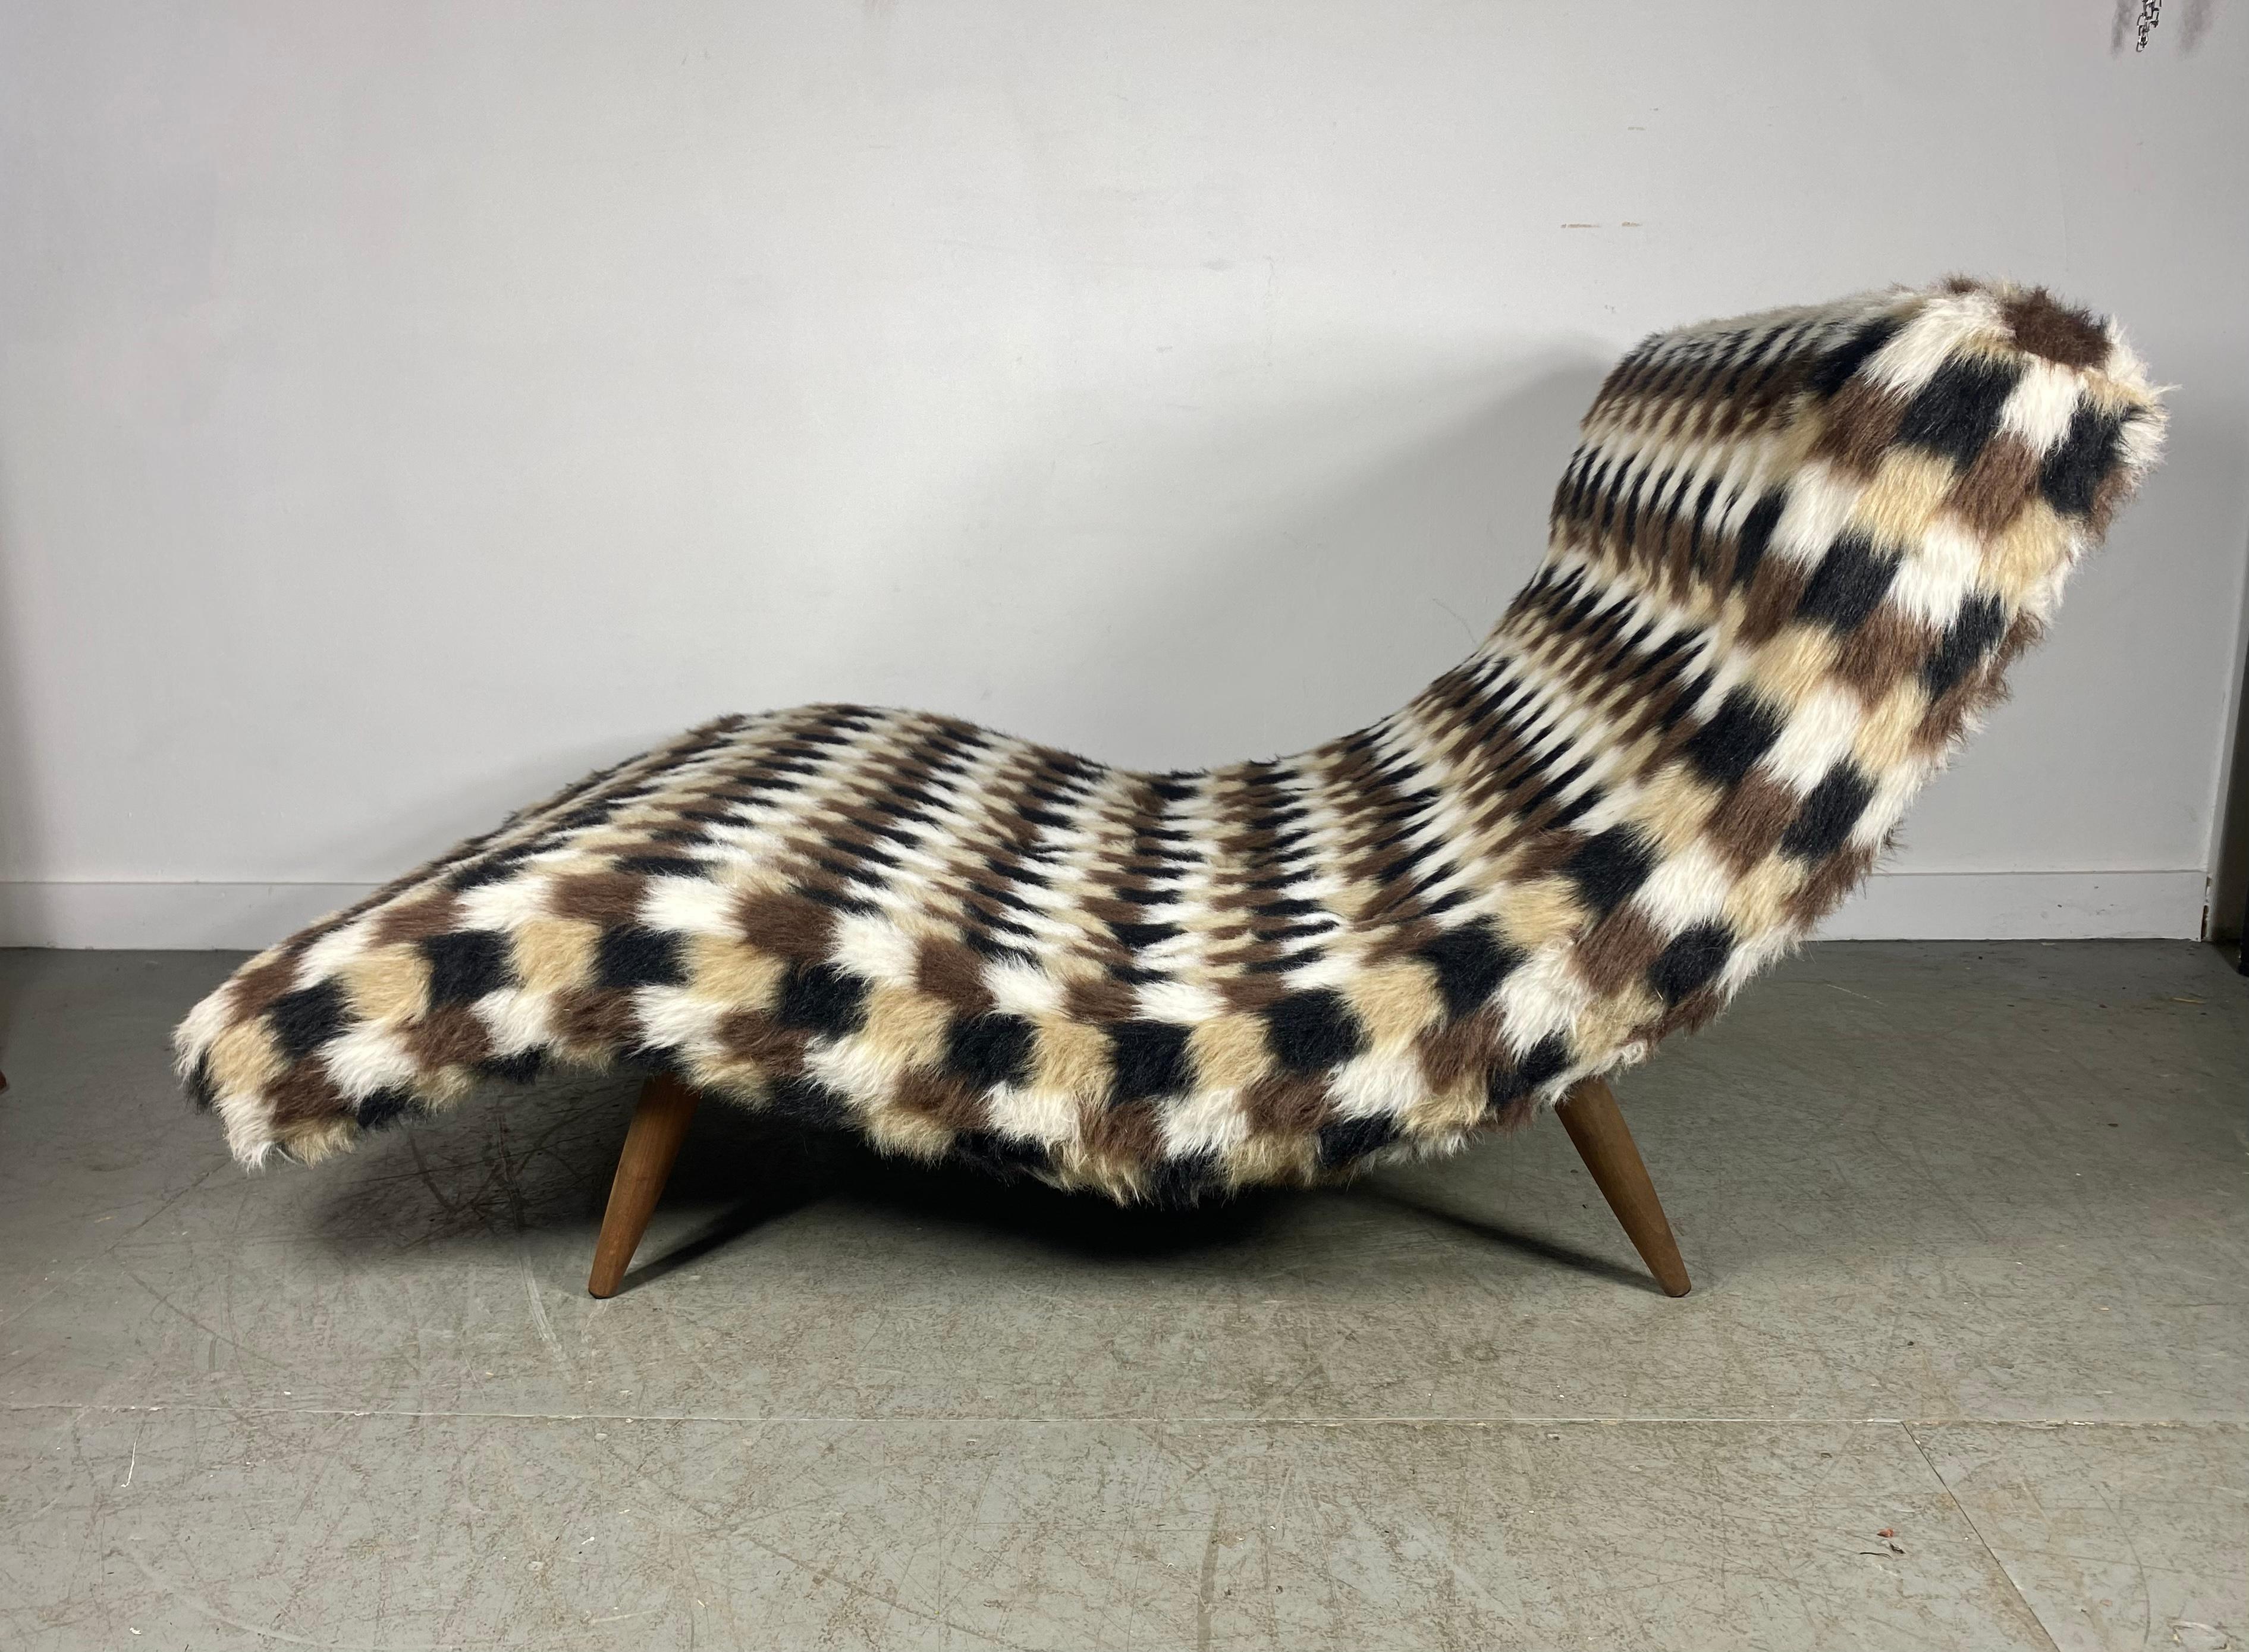 La chaise longue Wave d'Adrian Pearsall, datant de la fin des années 1960 et du début des années 1970 et conçue pour Craft Associates, a conservé son tissu géométrique noir, blanc et marron d'origine, dans un état de neuf ! Livraison en main propre